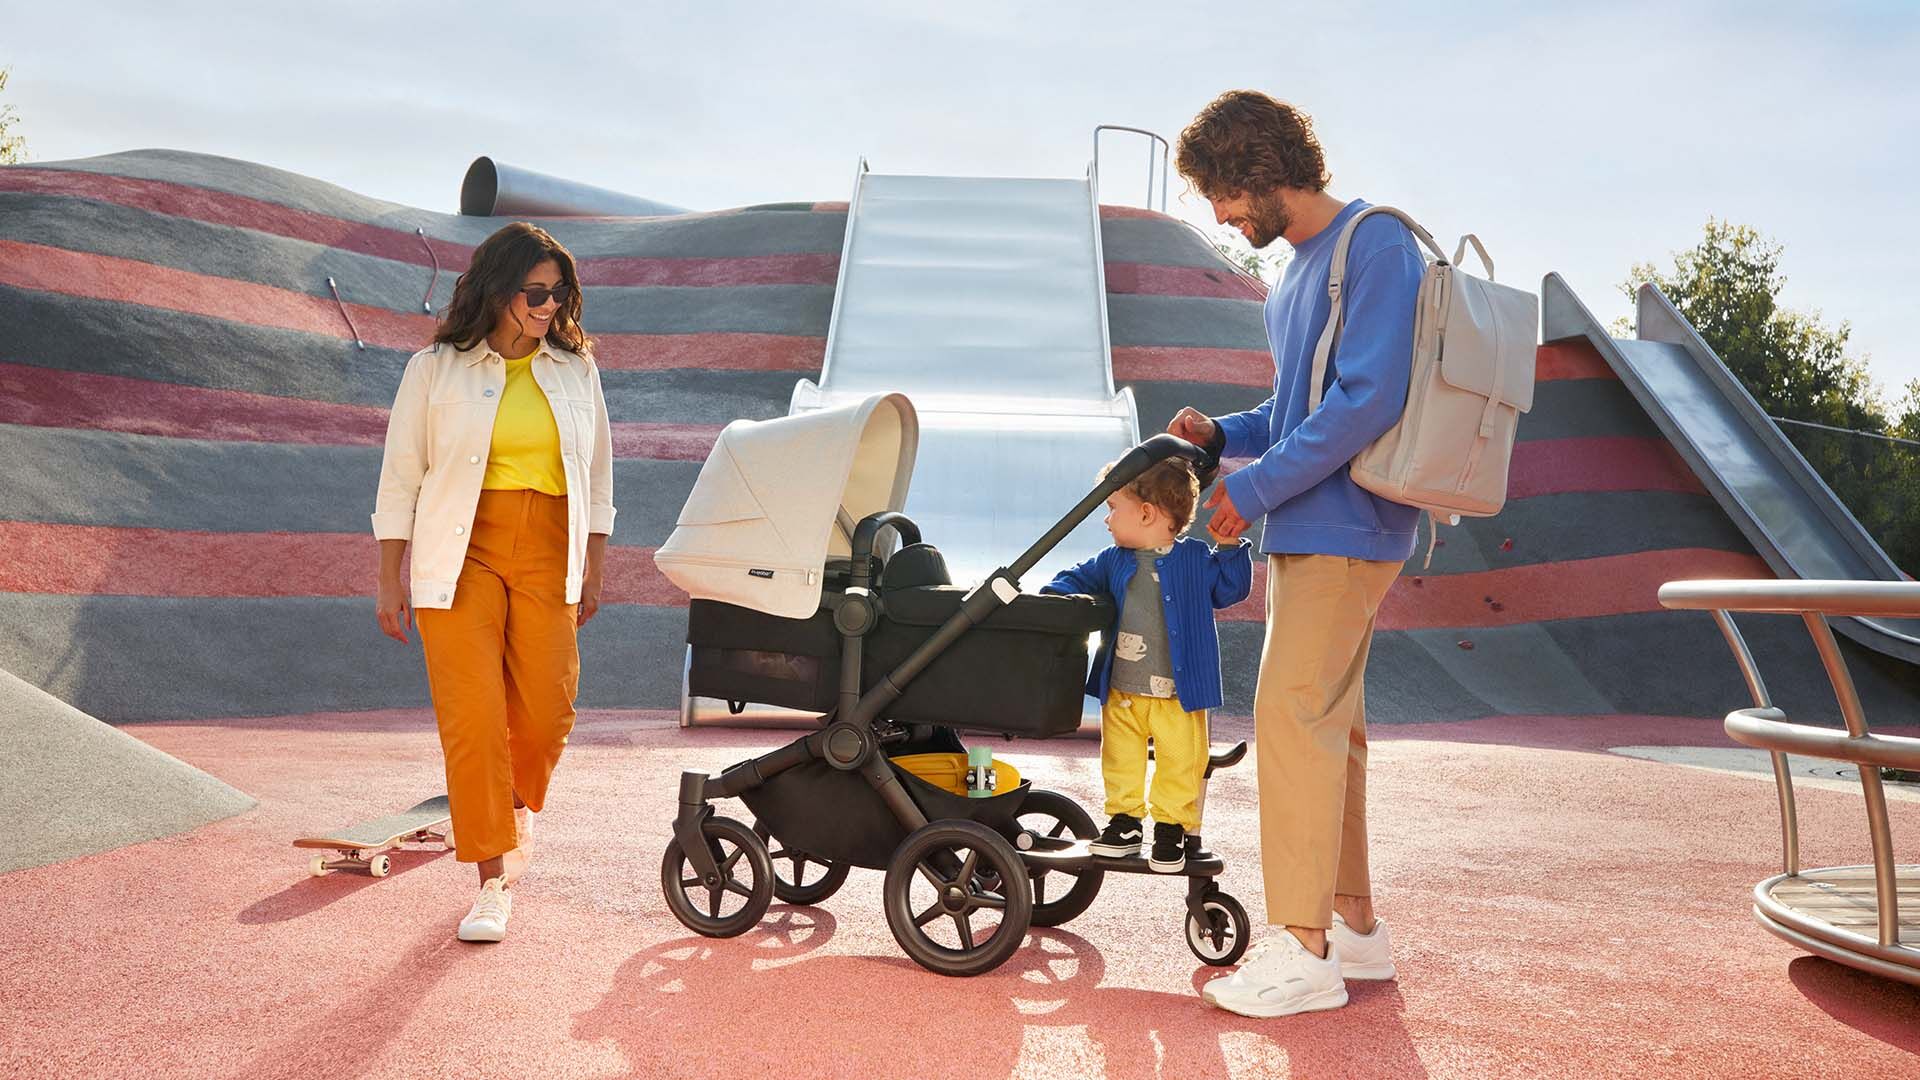 Eine vierköpfige Familie genießt einen Tagesausflug; der Vater trägt einen Bugaboo Wickelrucksack und schiebt einen Bugaboo Kinderwagen, während ein Kleinkind auf einem Bugaboo Mitfahrbrett steht